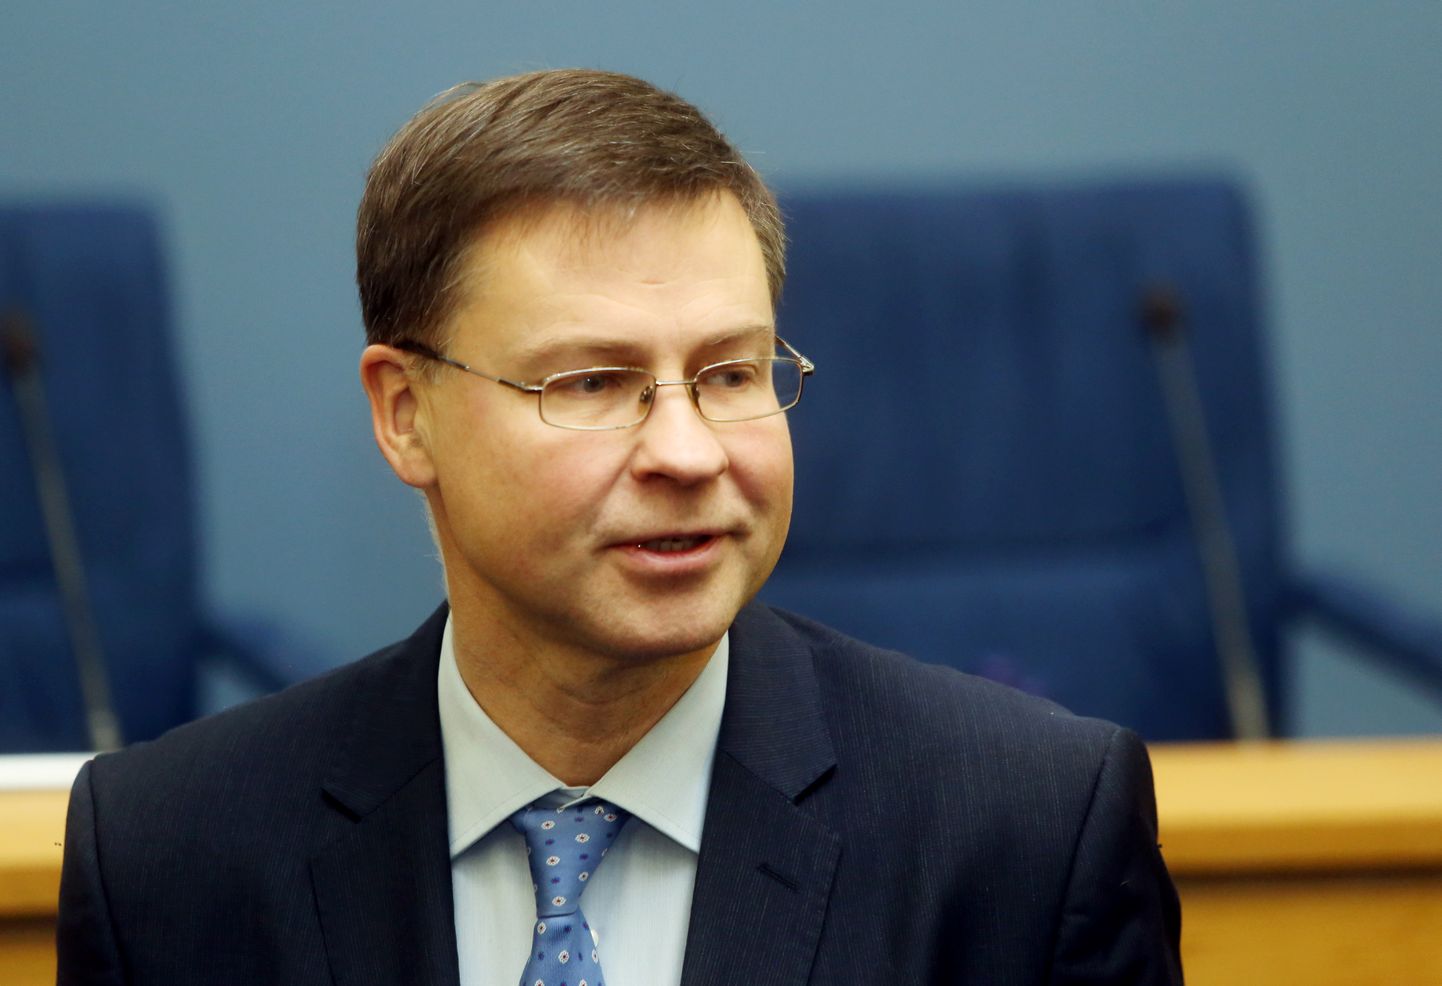 Eiropas Komisijas (EK) viceprezidents, ES tirdzniecības komisārs Valdis Dombrovskis